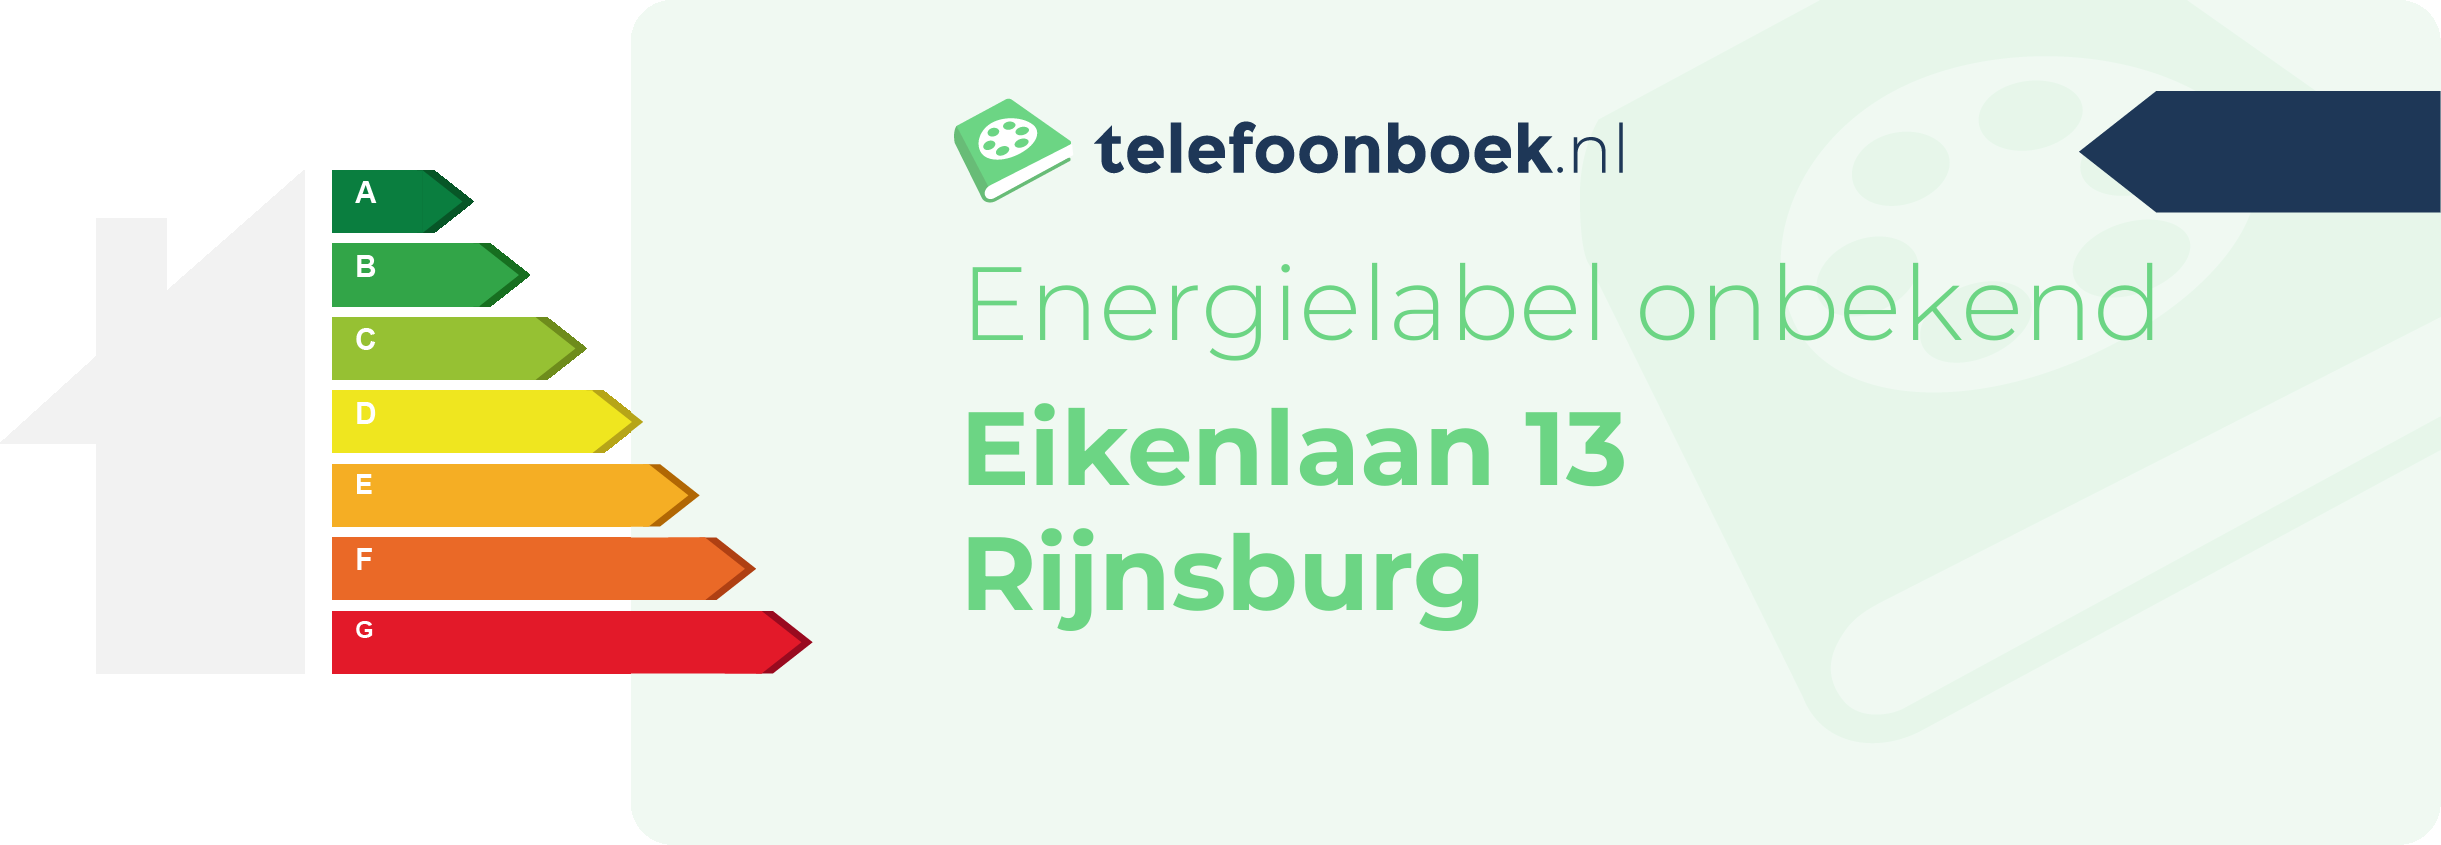 Energielabel Eikenlaan 13 Rijnsburg